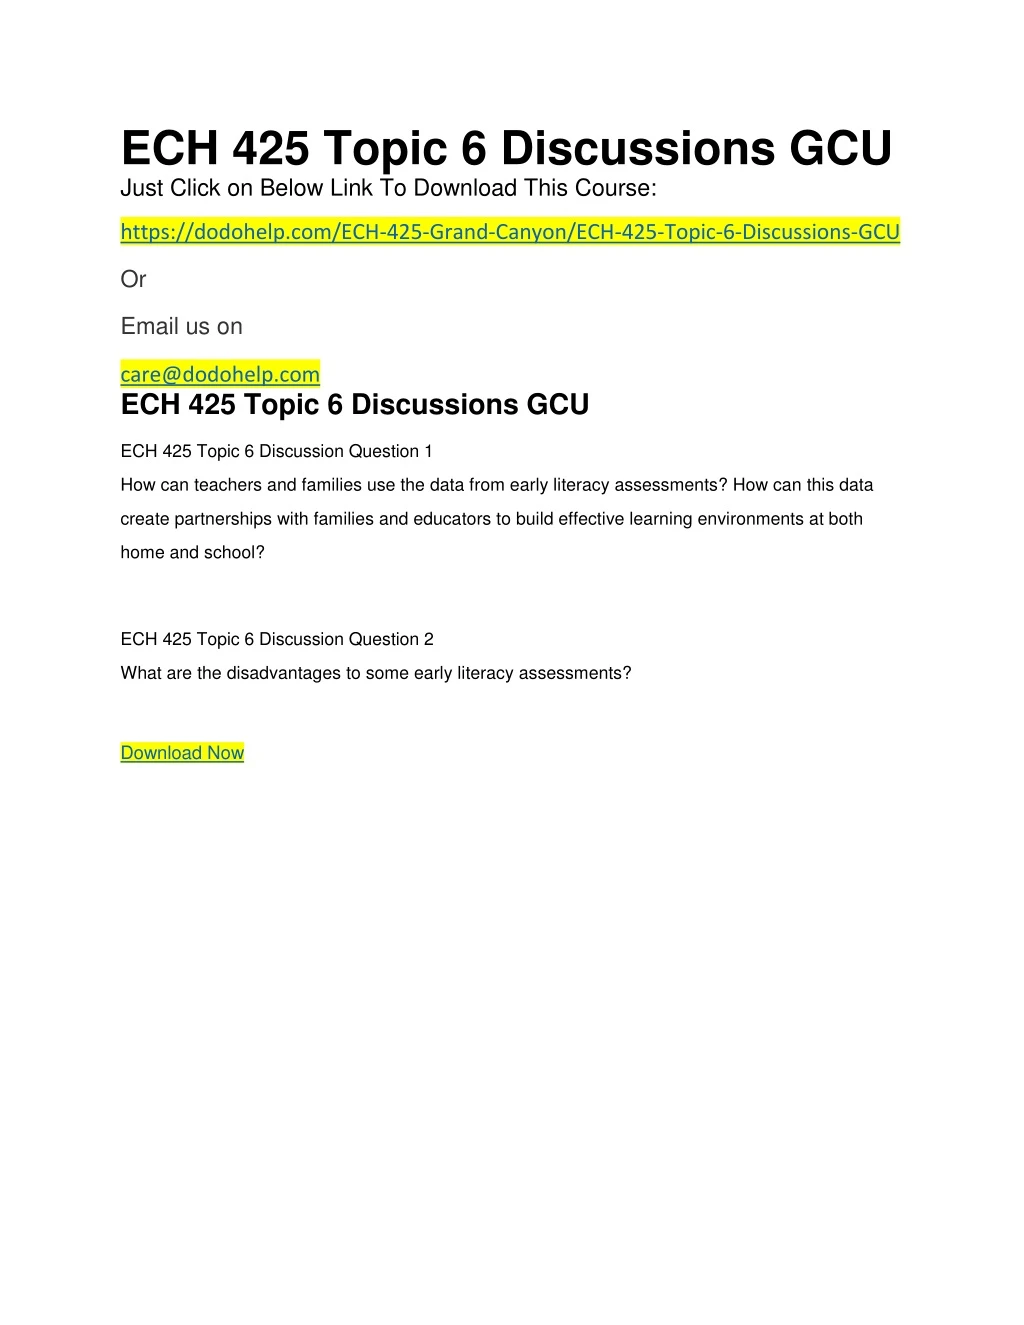 ech 425 topic 6 discussions gcu just click